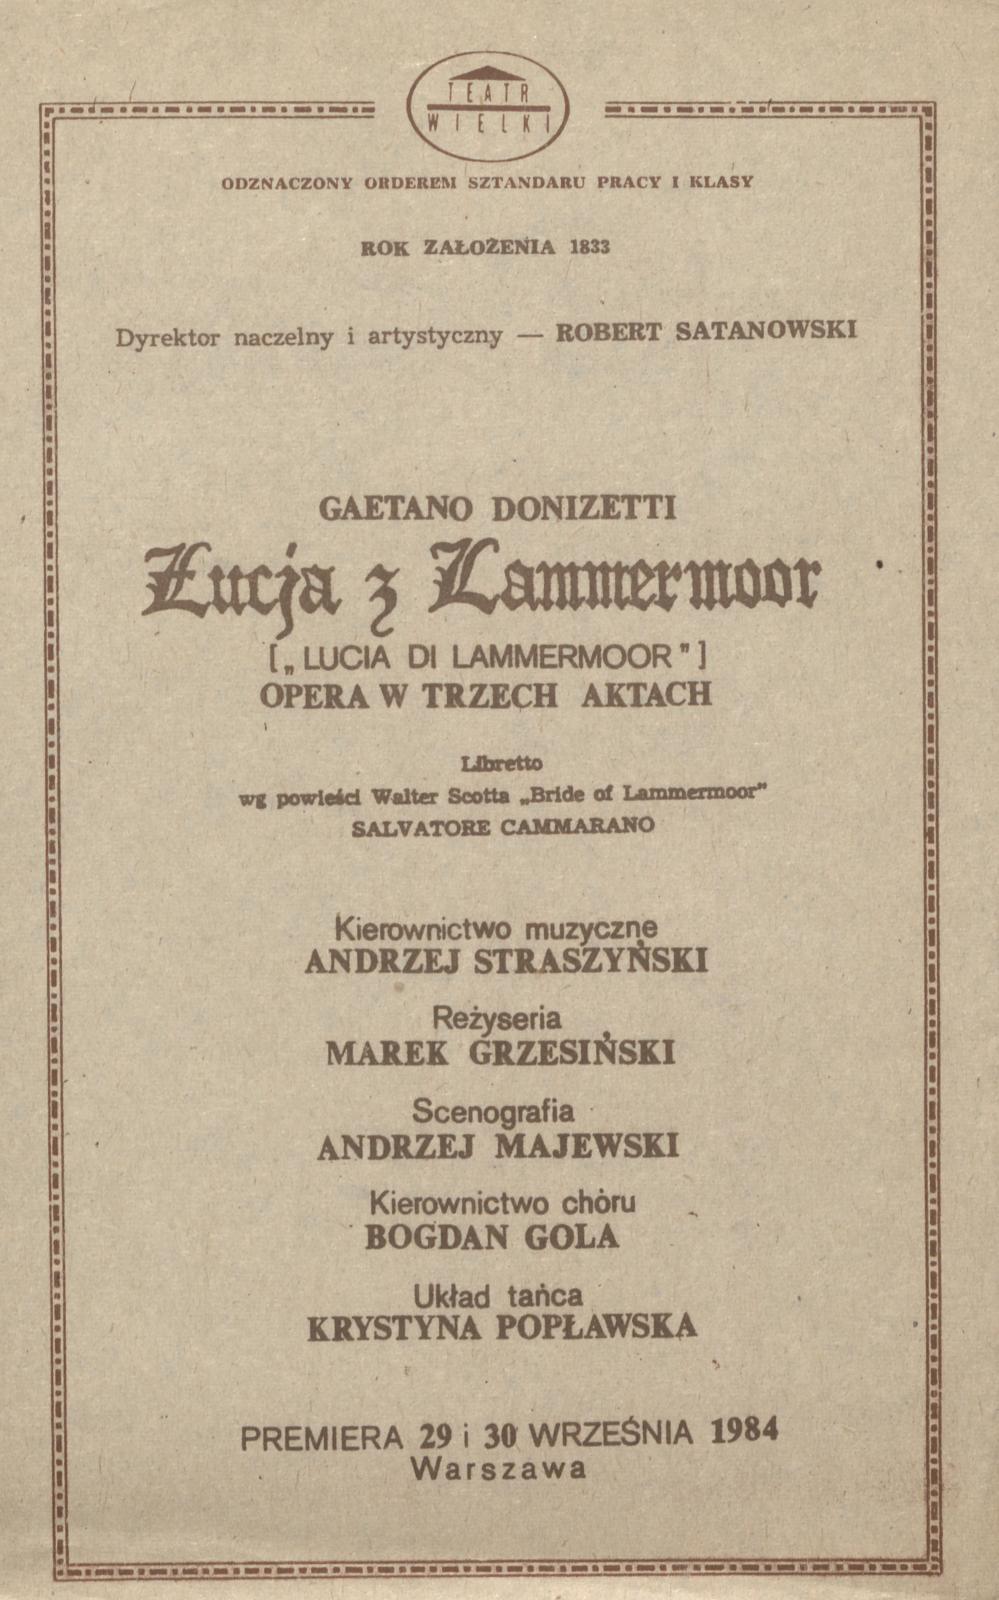 Wkładka Obsadowa "Łucja z Lammermoor" Gaetano Donizetti 30-09-1984 II Premiera